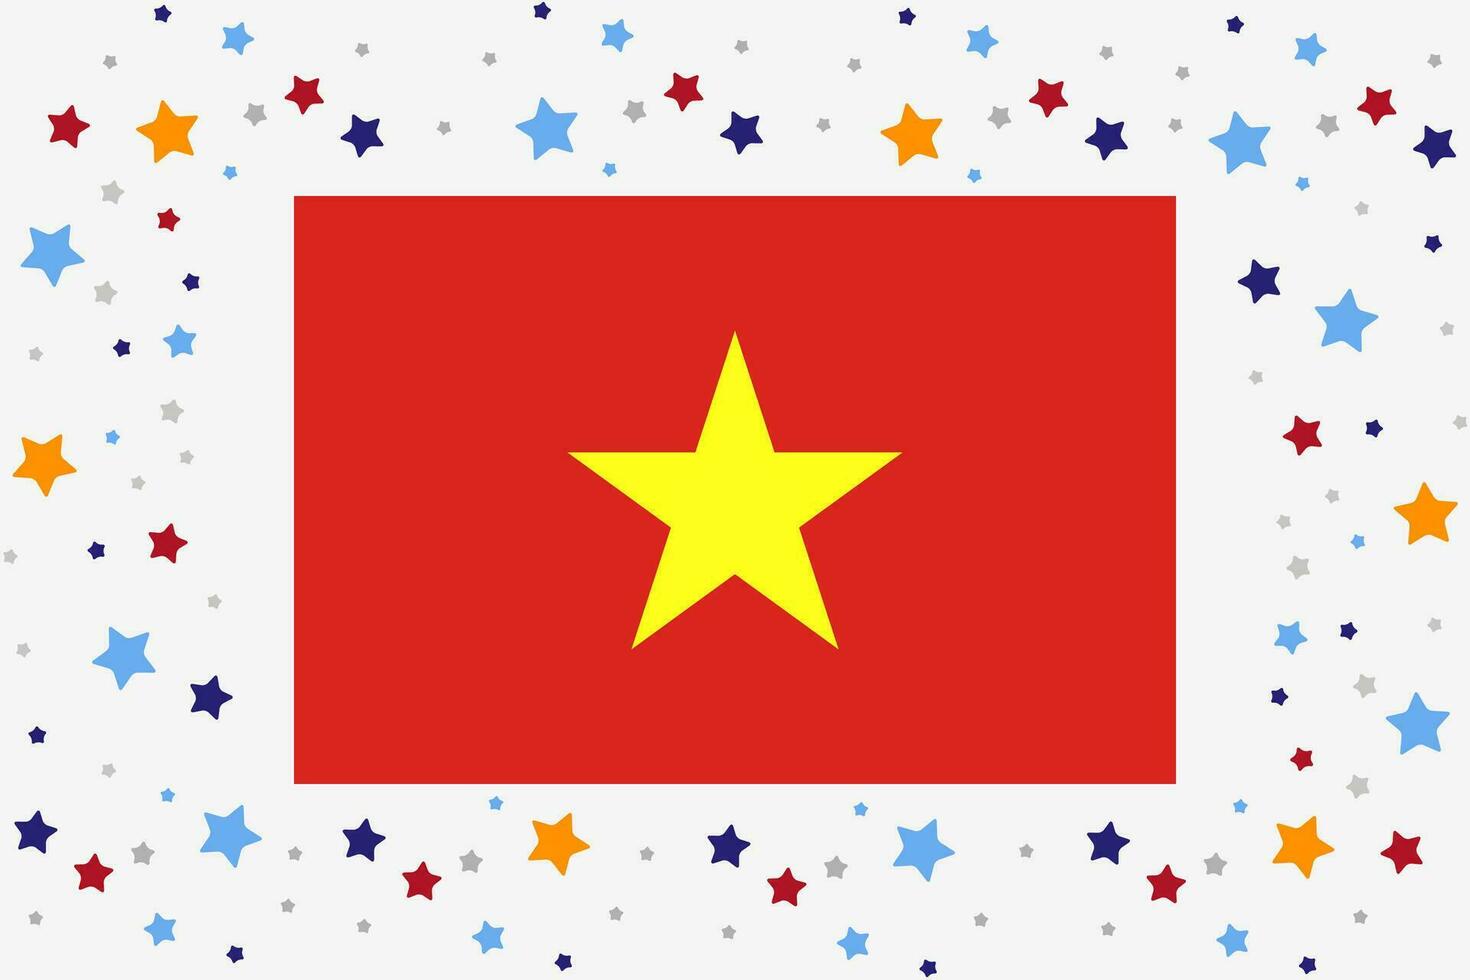 Vietnam Flagge Unabhängigkeit Tag Feier mit Sterne vektor